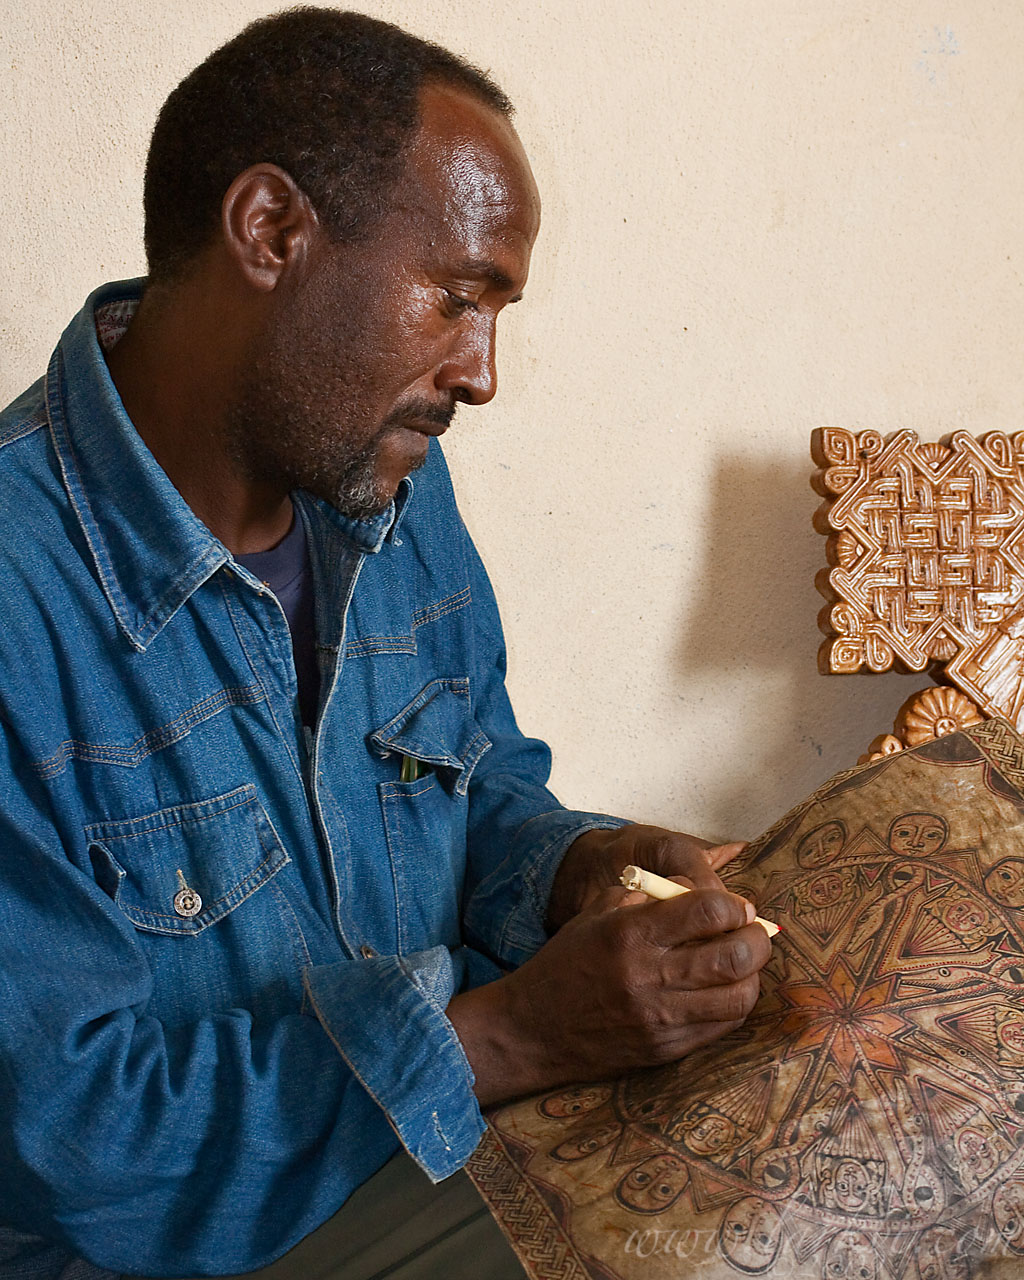 Keshi Mengistu Eyesus, Mek'ele, Tigray, March 2009